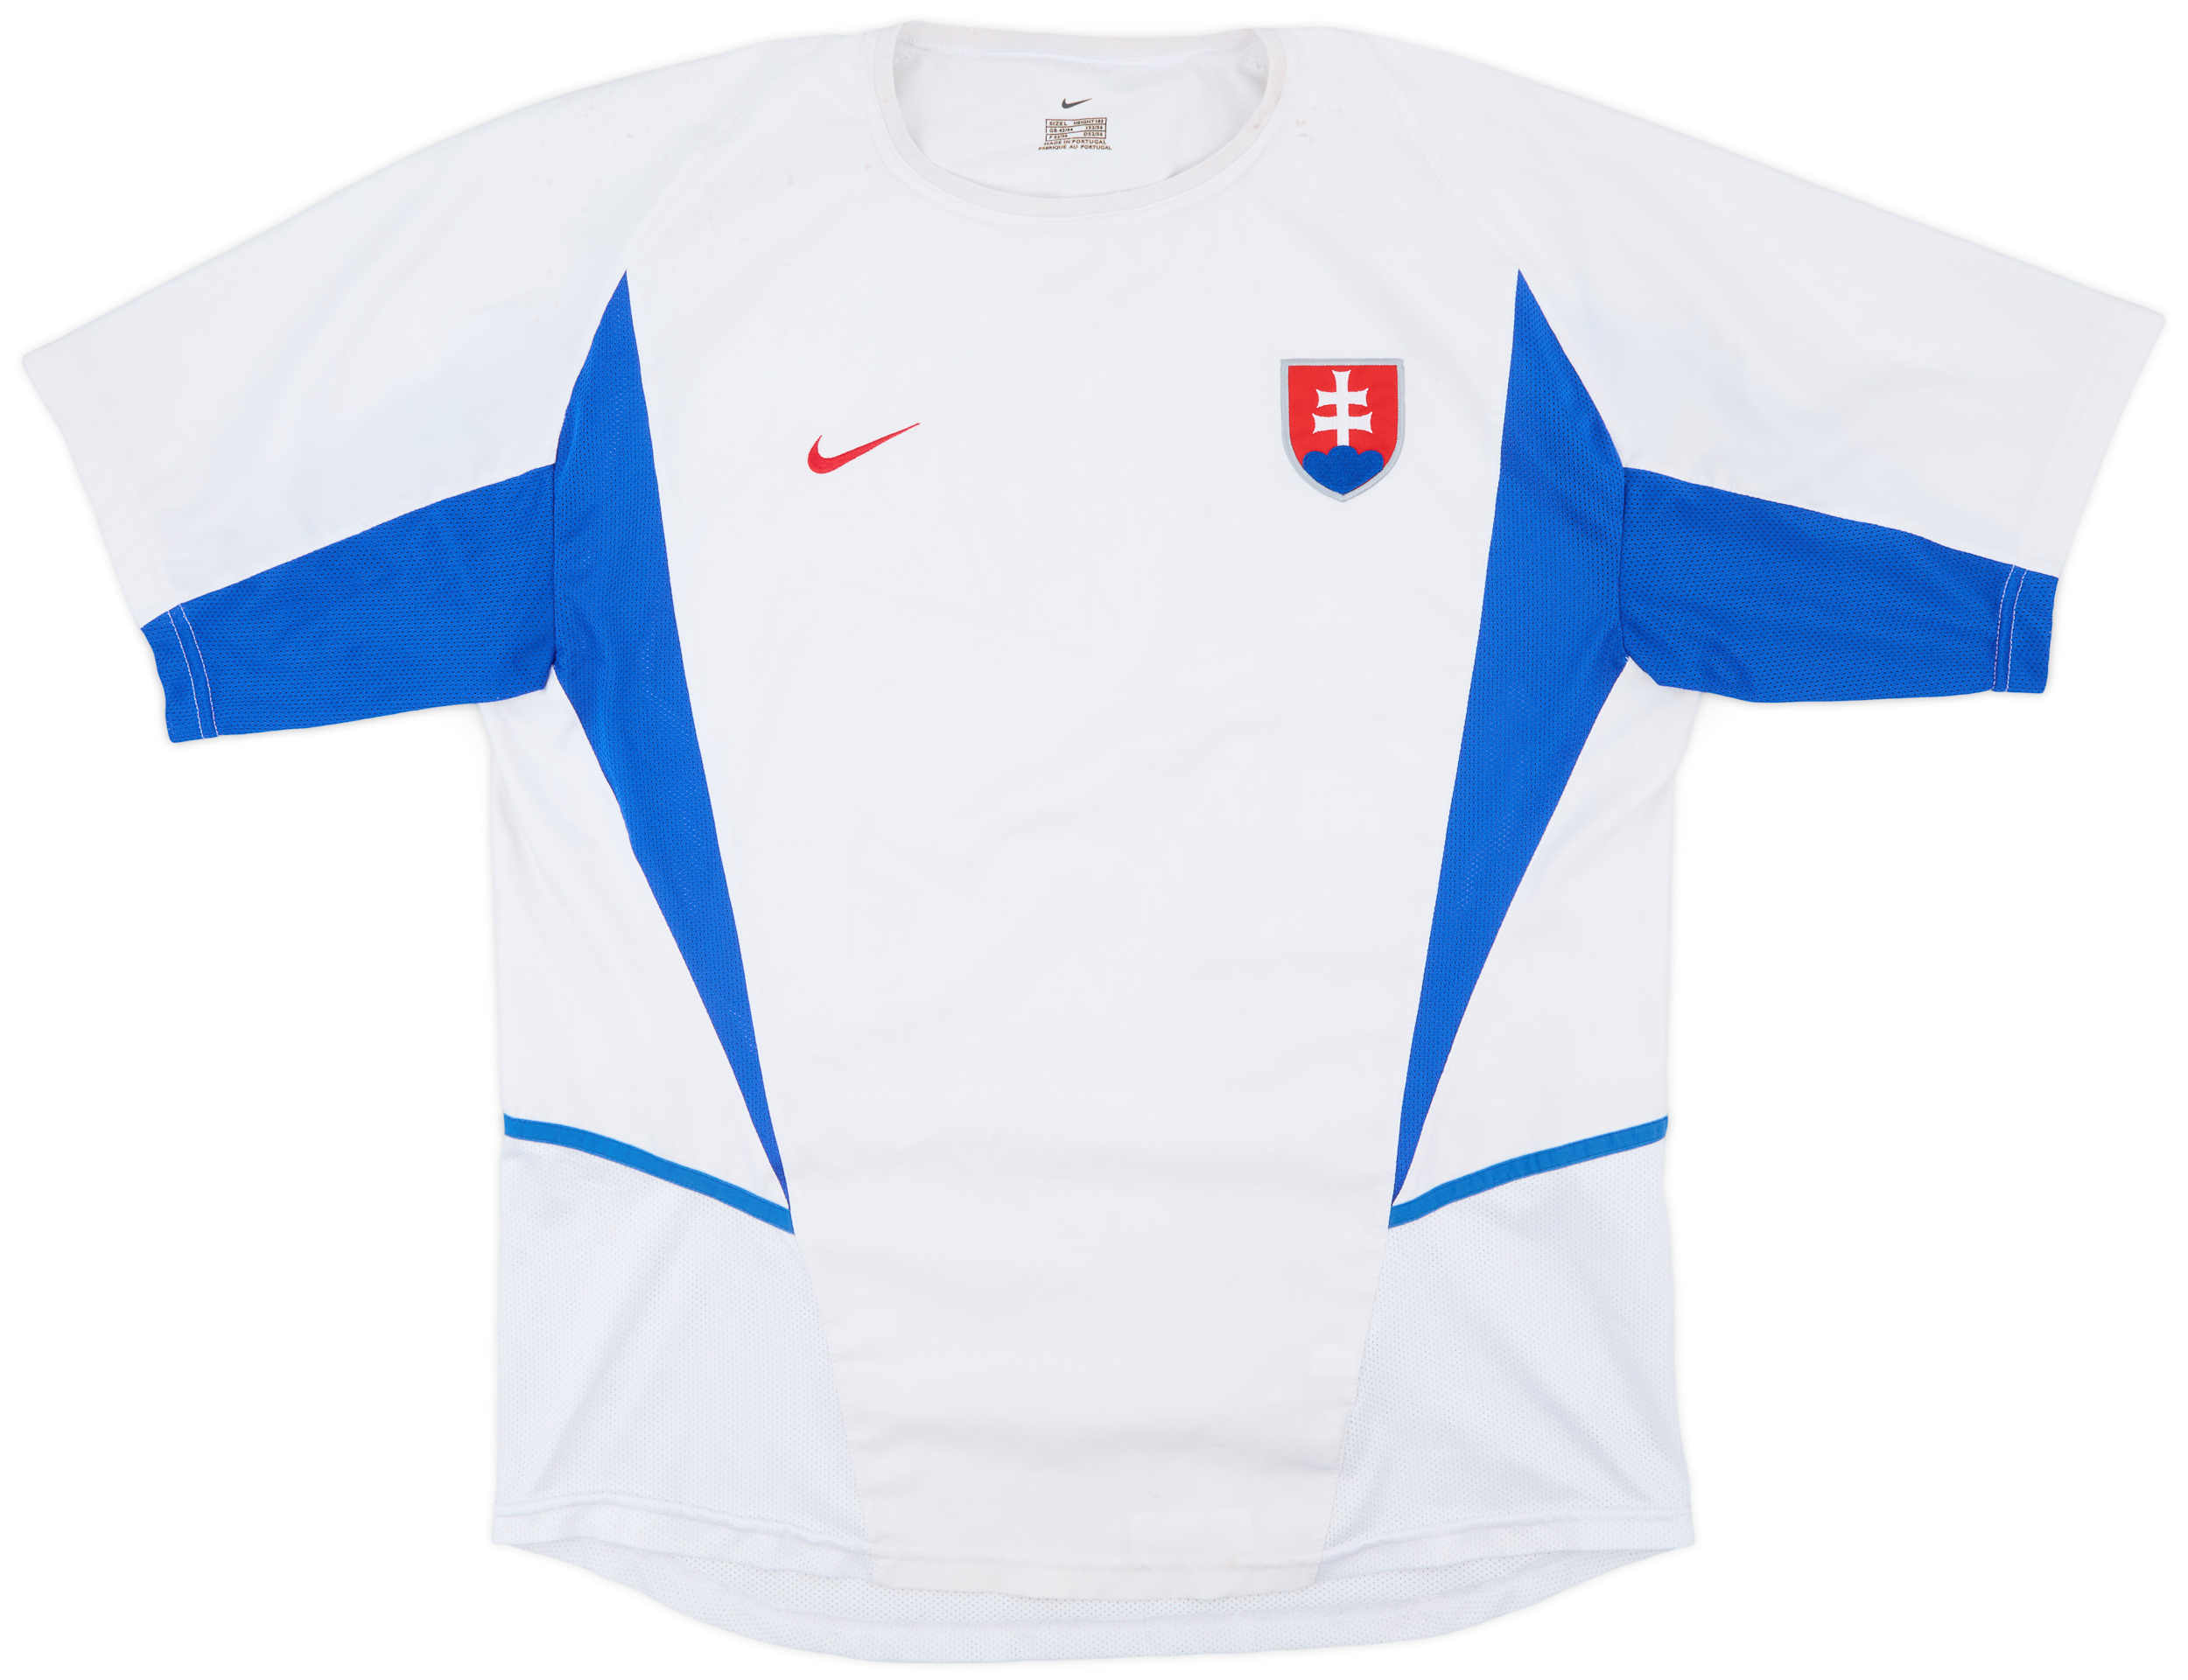 Slovakia   Away shirt (Original)